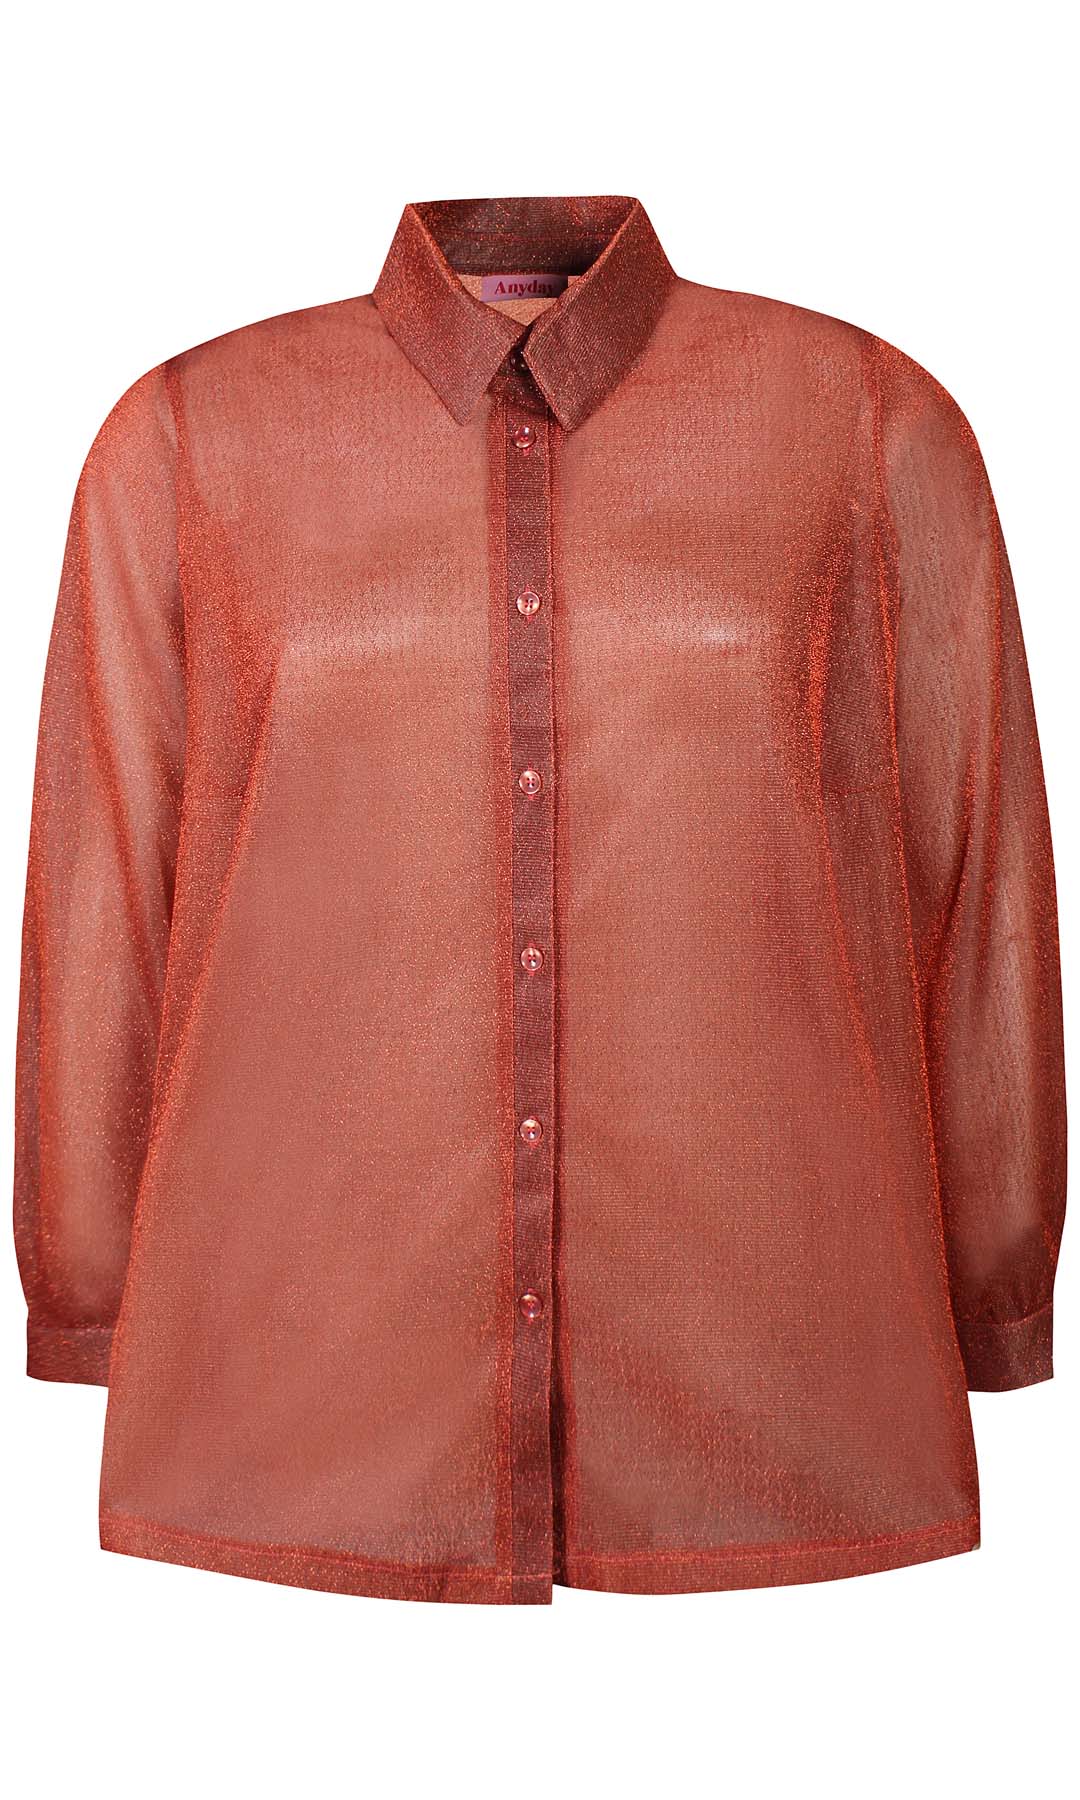 Liv 071 - Shirt - Orange